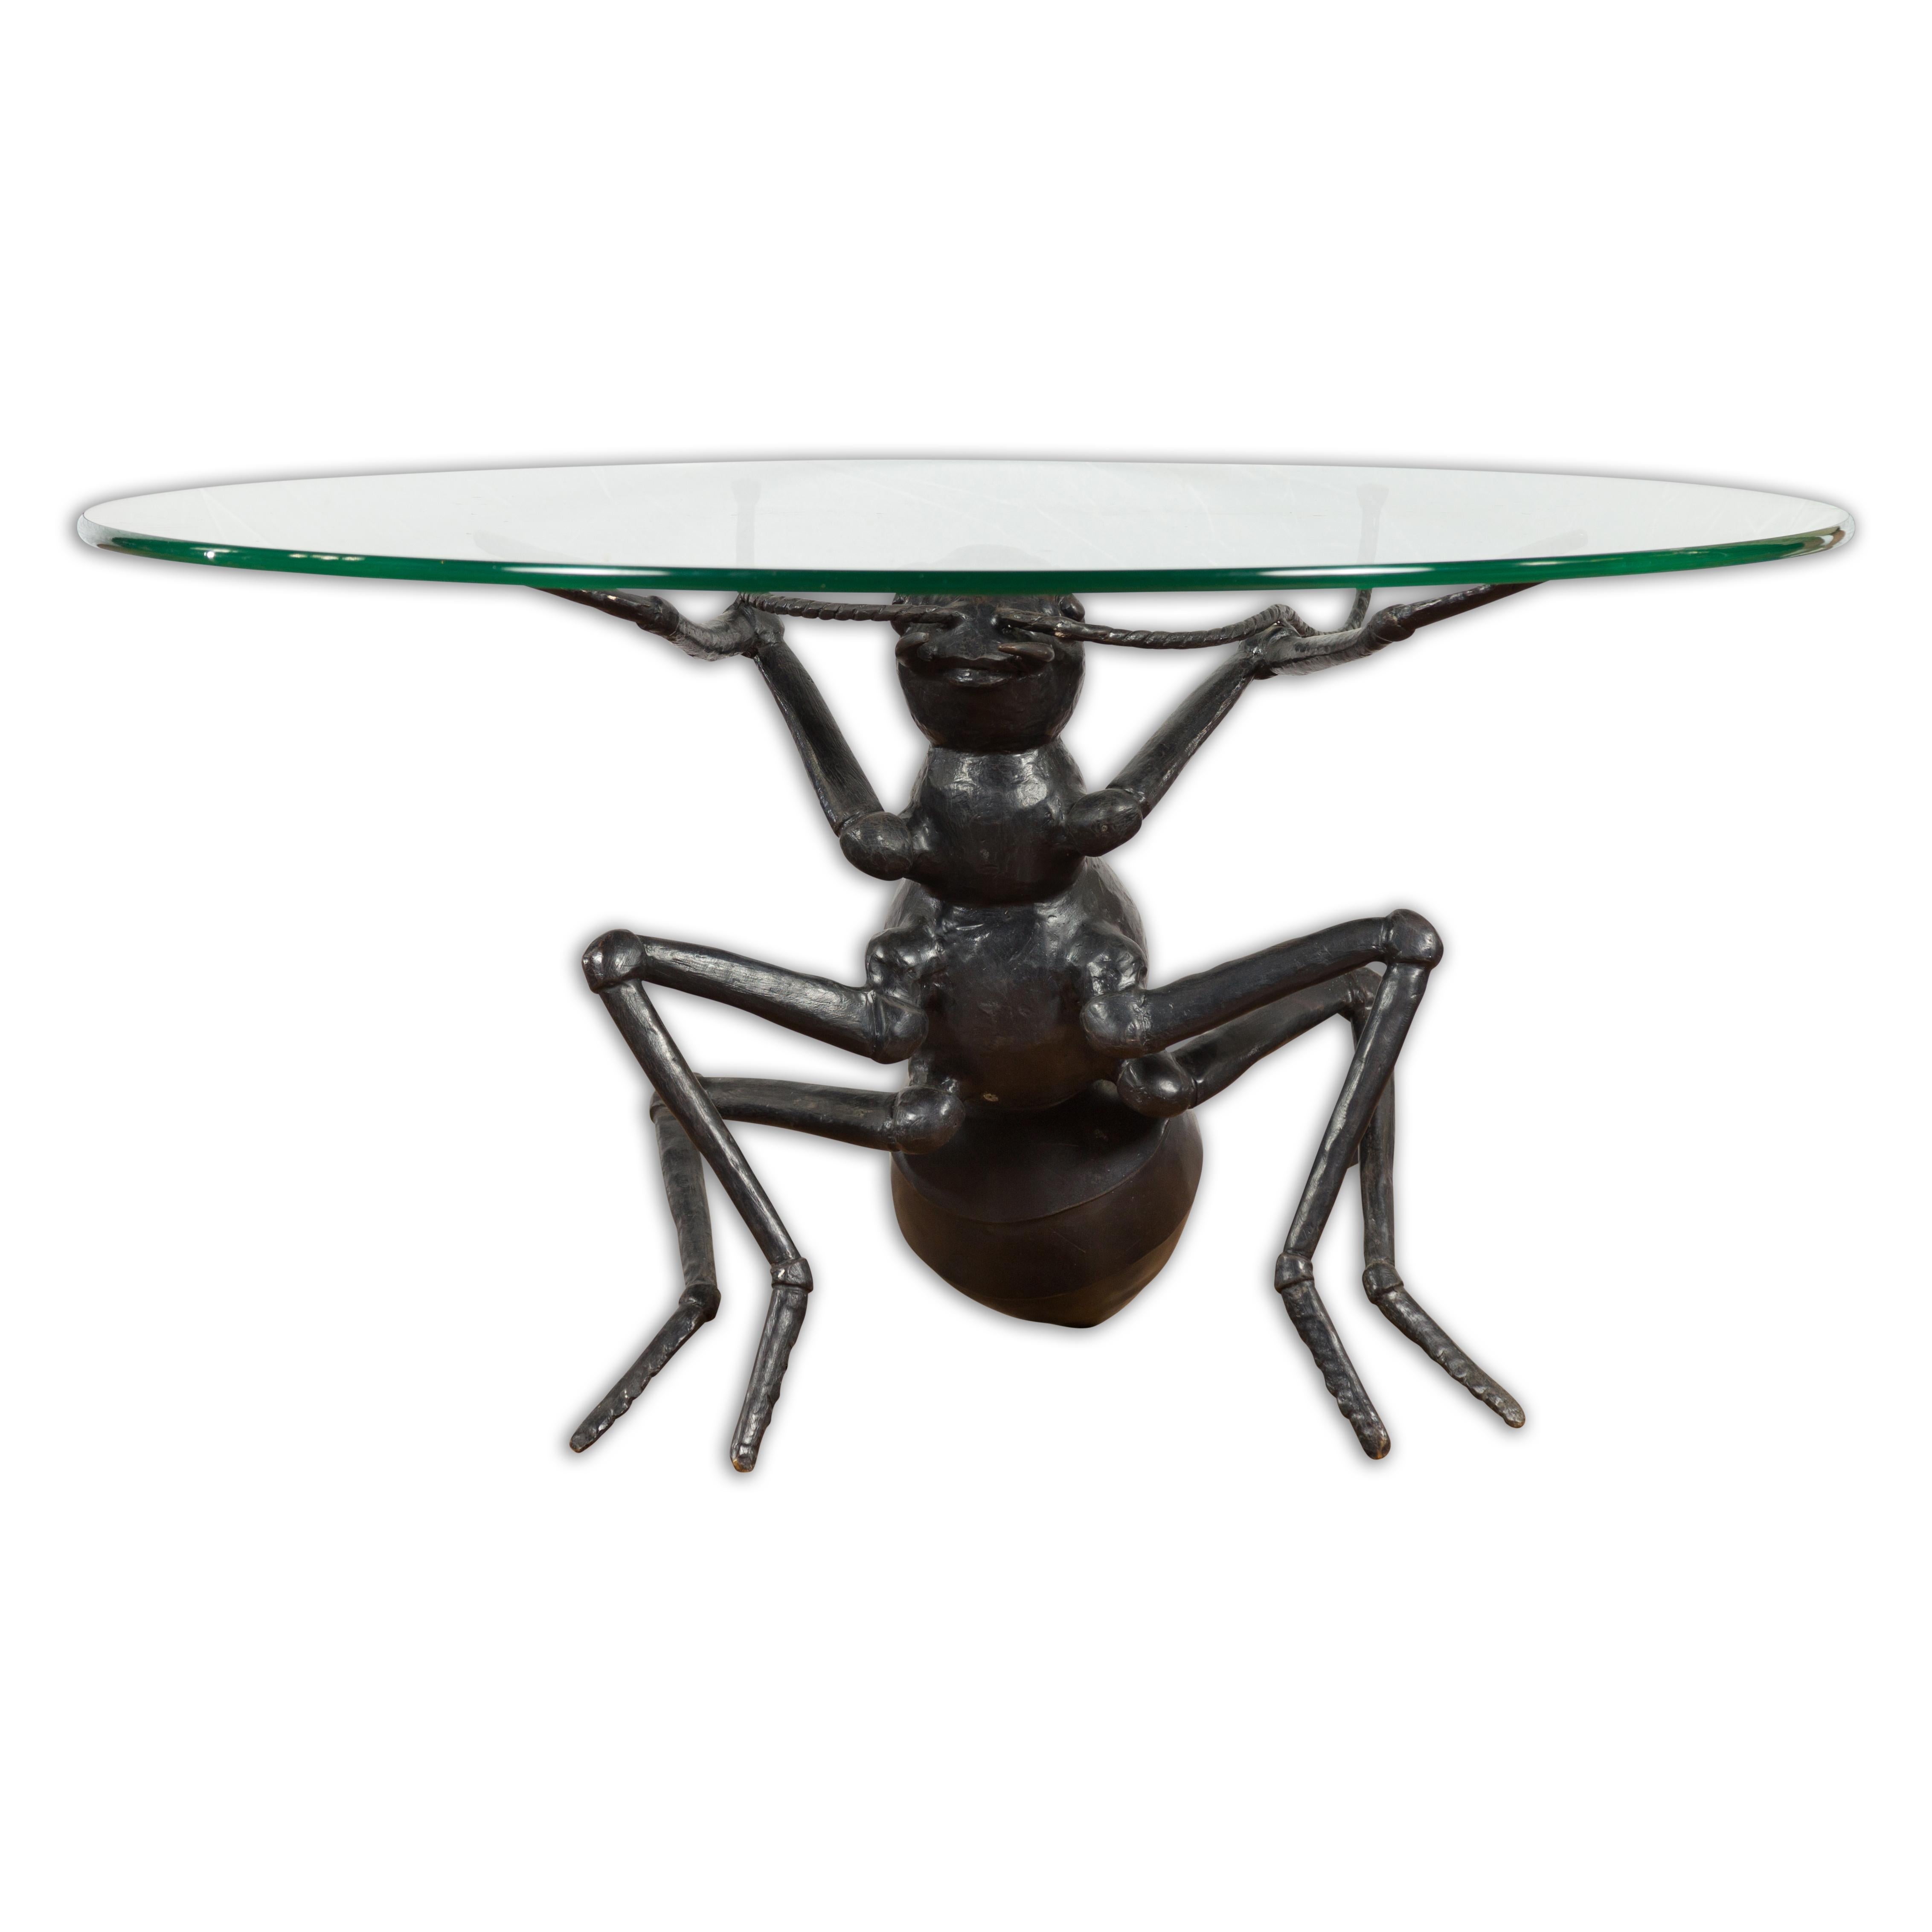 Sculpture contemporaine du 21e siècle en bronze coulé à la cire perdue représentant une fourmi. Réalisé selon la technique traditionnelle de la cire perdue qui permet une grande précision et finesse dans les détails, ce pied de table basse retient